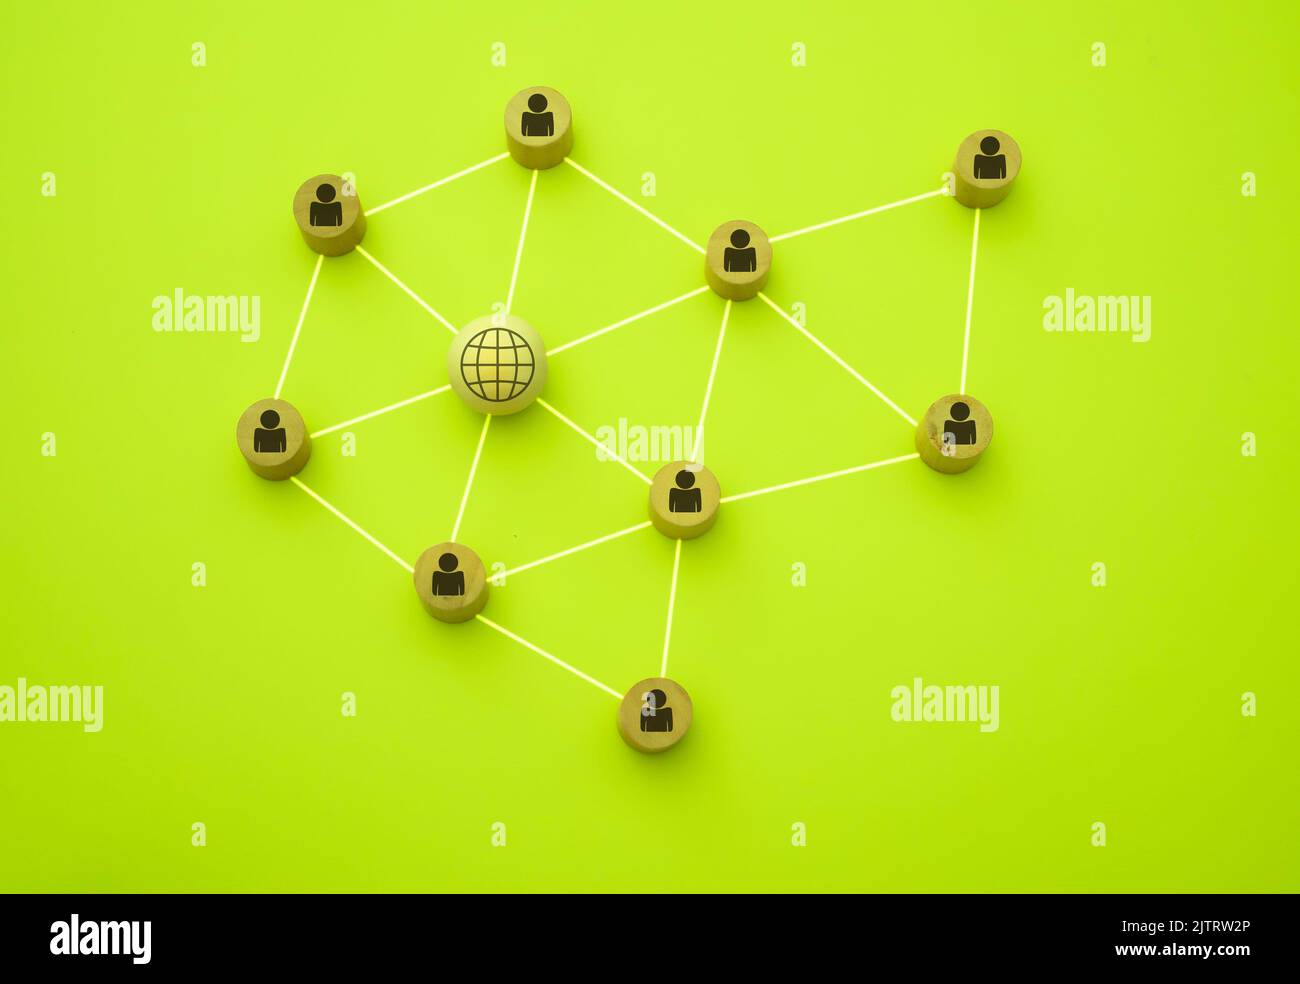 3D Darstellung von Menschen, die mit dem Netzwerk in Form eines Netzes verbunden sind, dargestellt mit Holzstücken auf grünem Hintergrund Stockfoto